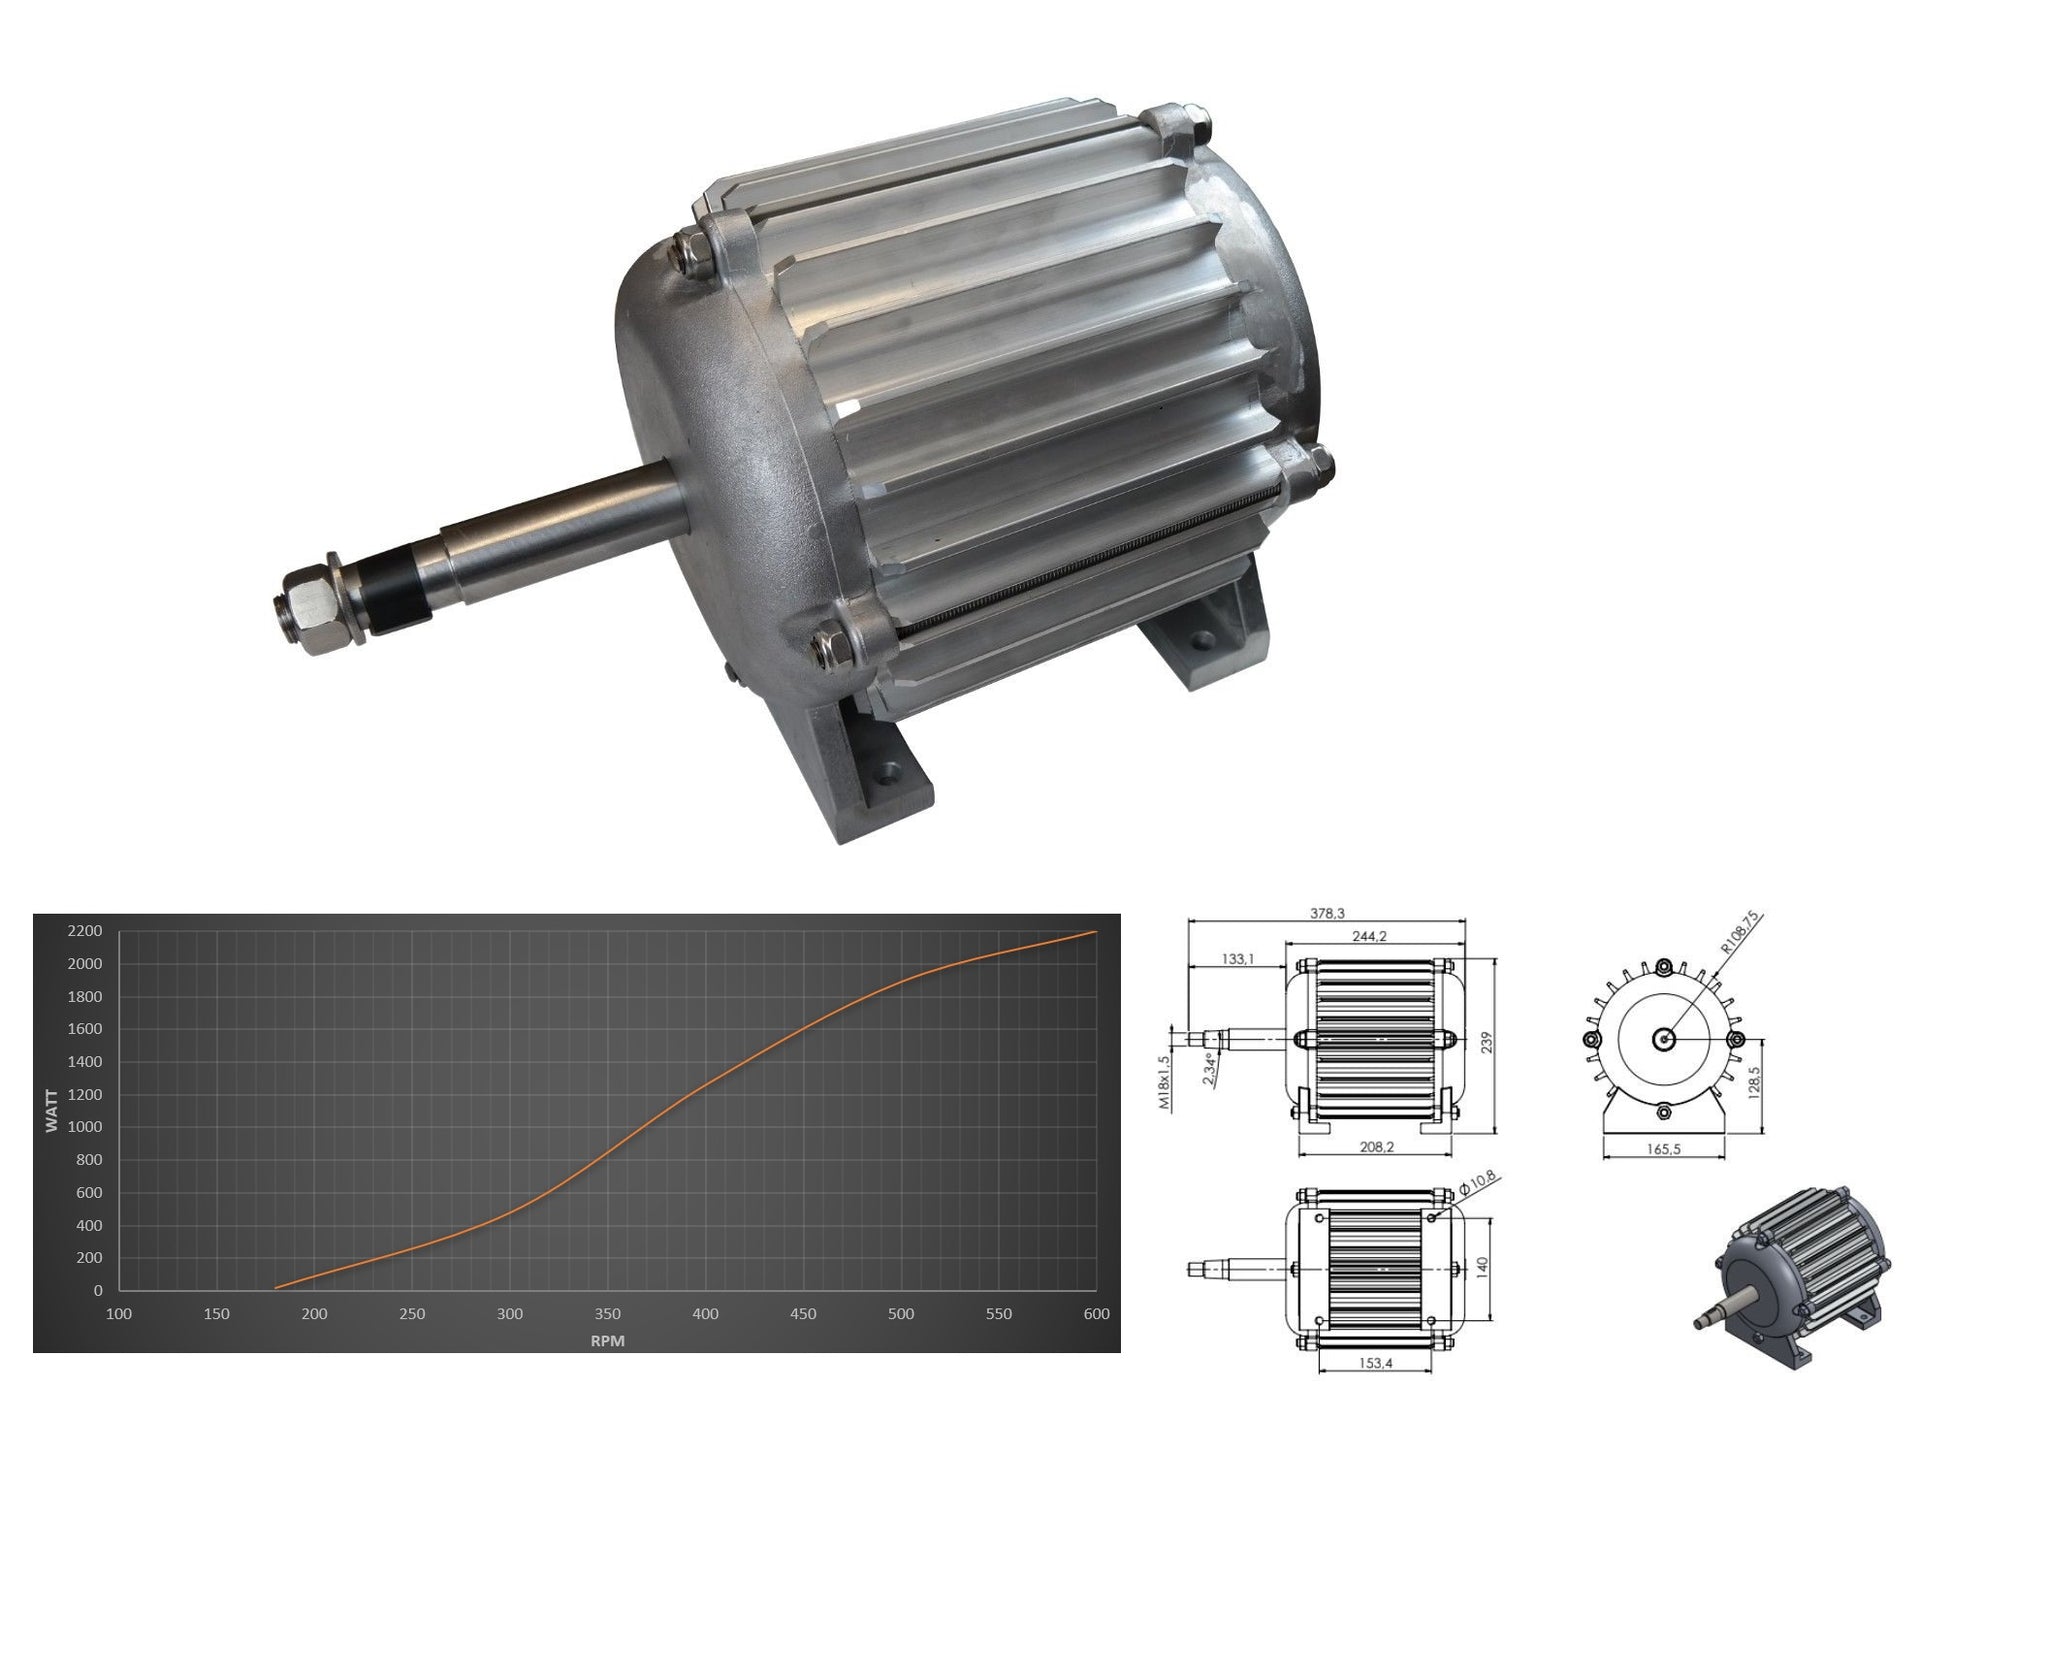 RU2642442C1 - Синхронный генератор с двухконтурной магнитной системой - Google Patents